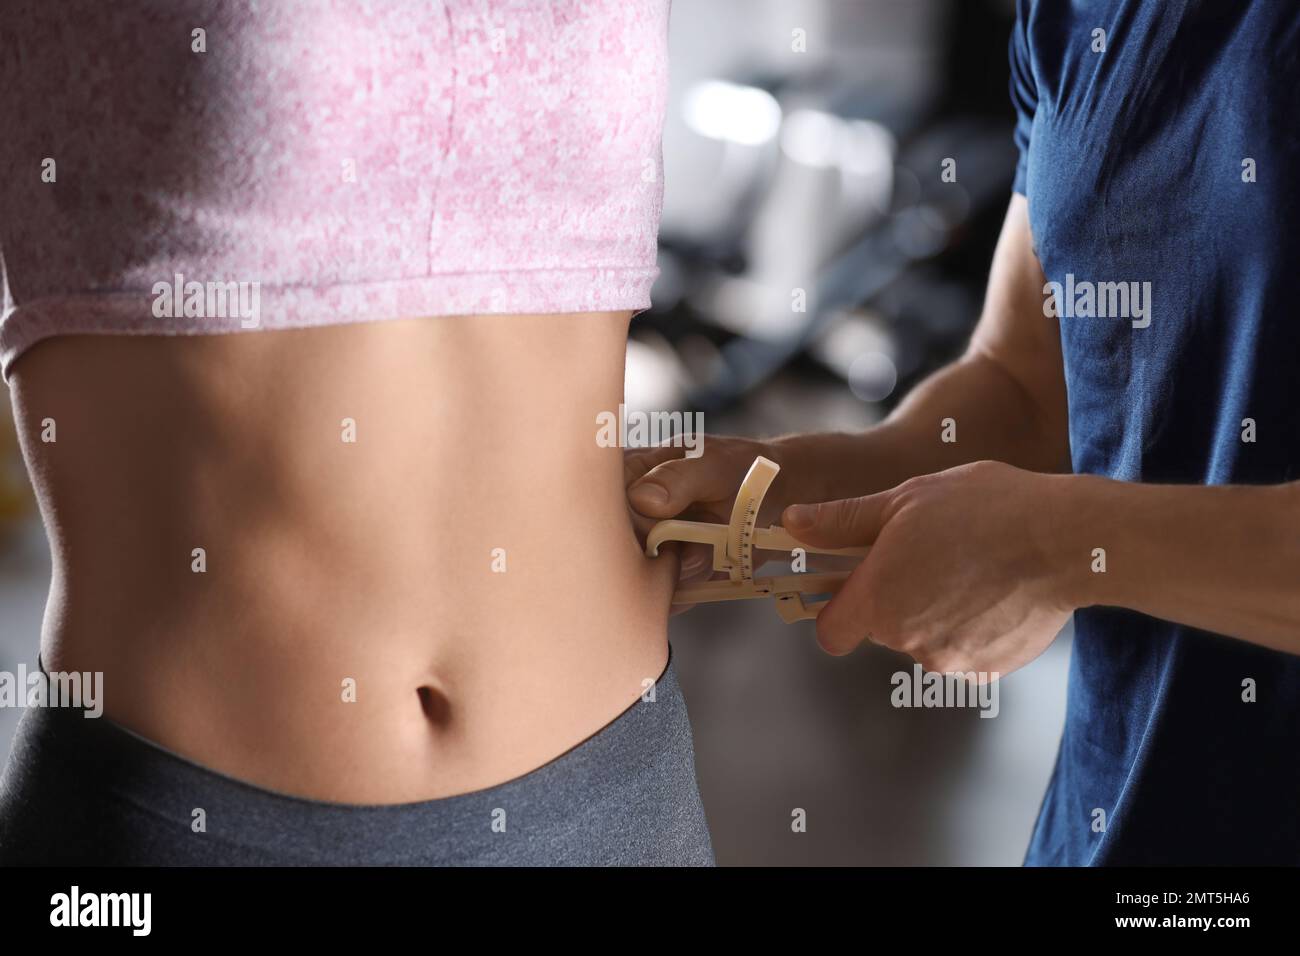 Nutrizionista che misura lo strato grasso del corpo della donna con calibro interno, primo piano Foto Stock